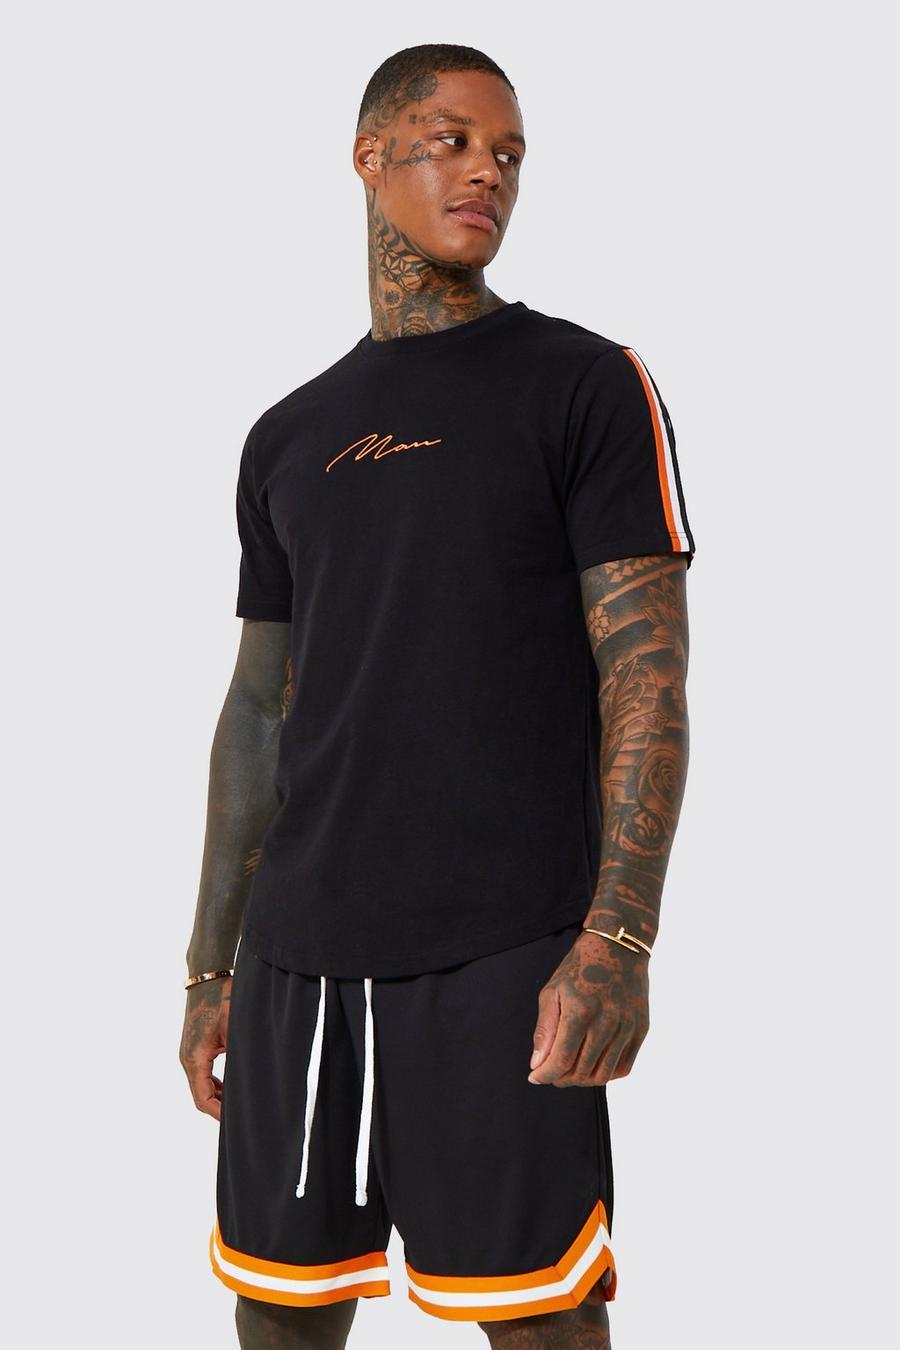 T-shirt con firma Man, fondo curvo e strisce a contrasto, Black negro